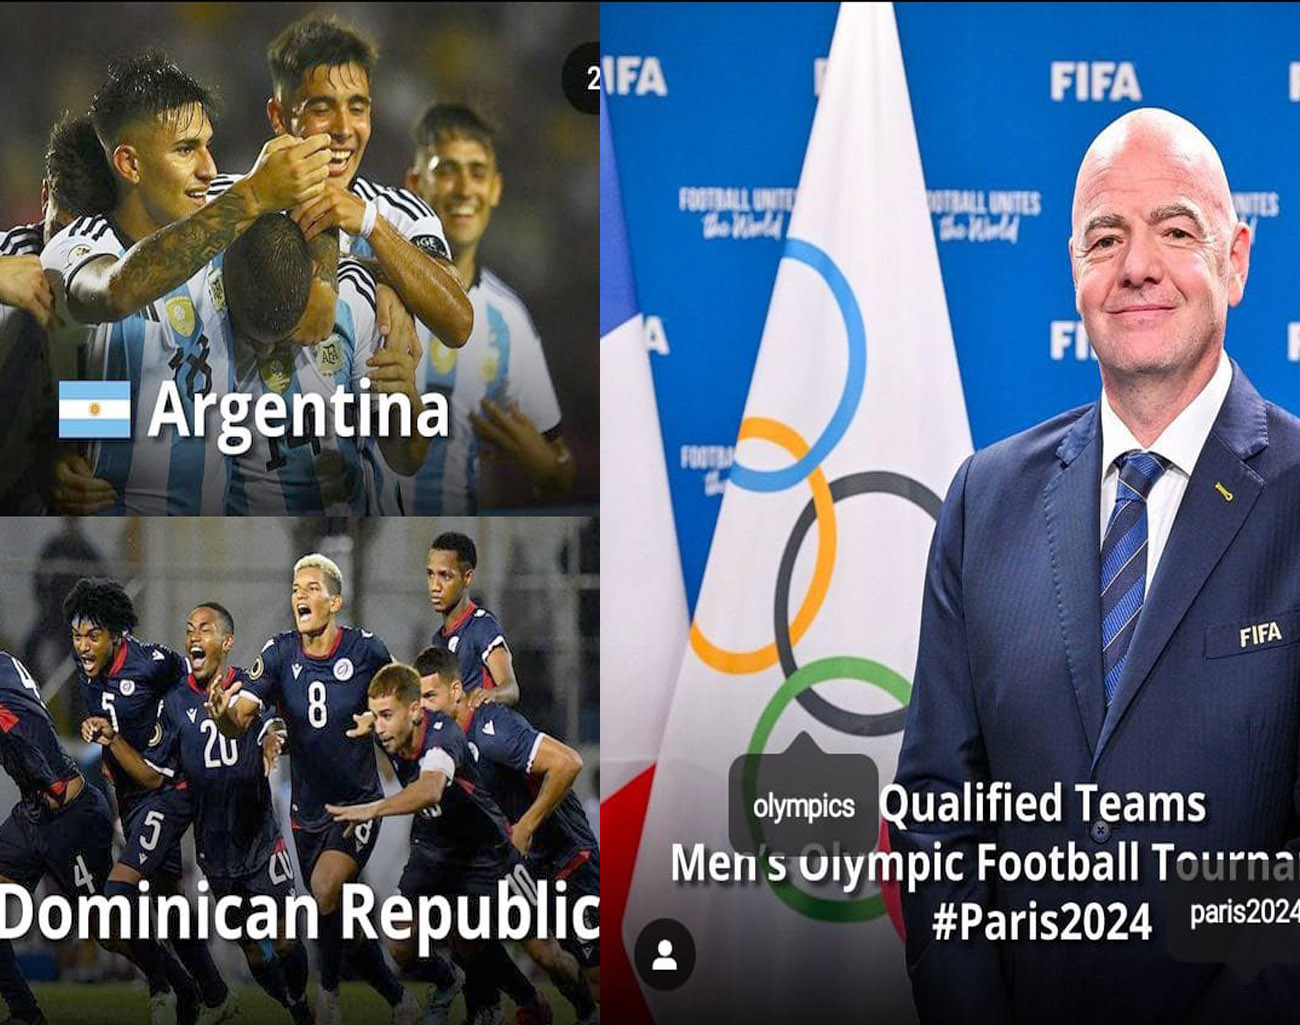 Presiden FIFA Gianni Infantino Umumkan 16 Timnas Ikut Kualifikasi Olimpiade Paris 2024, 3 Negara Asia